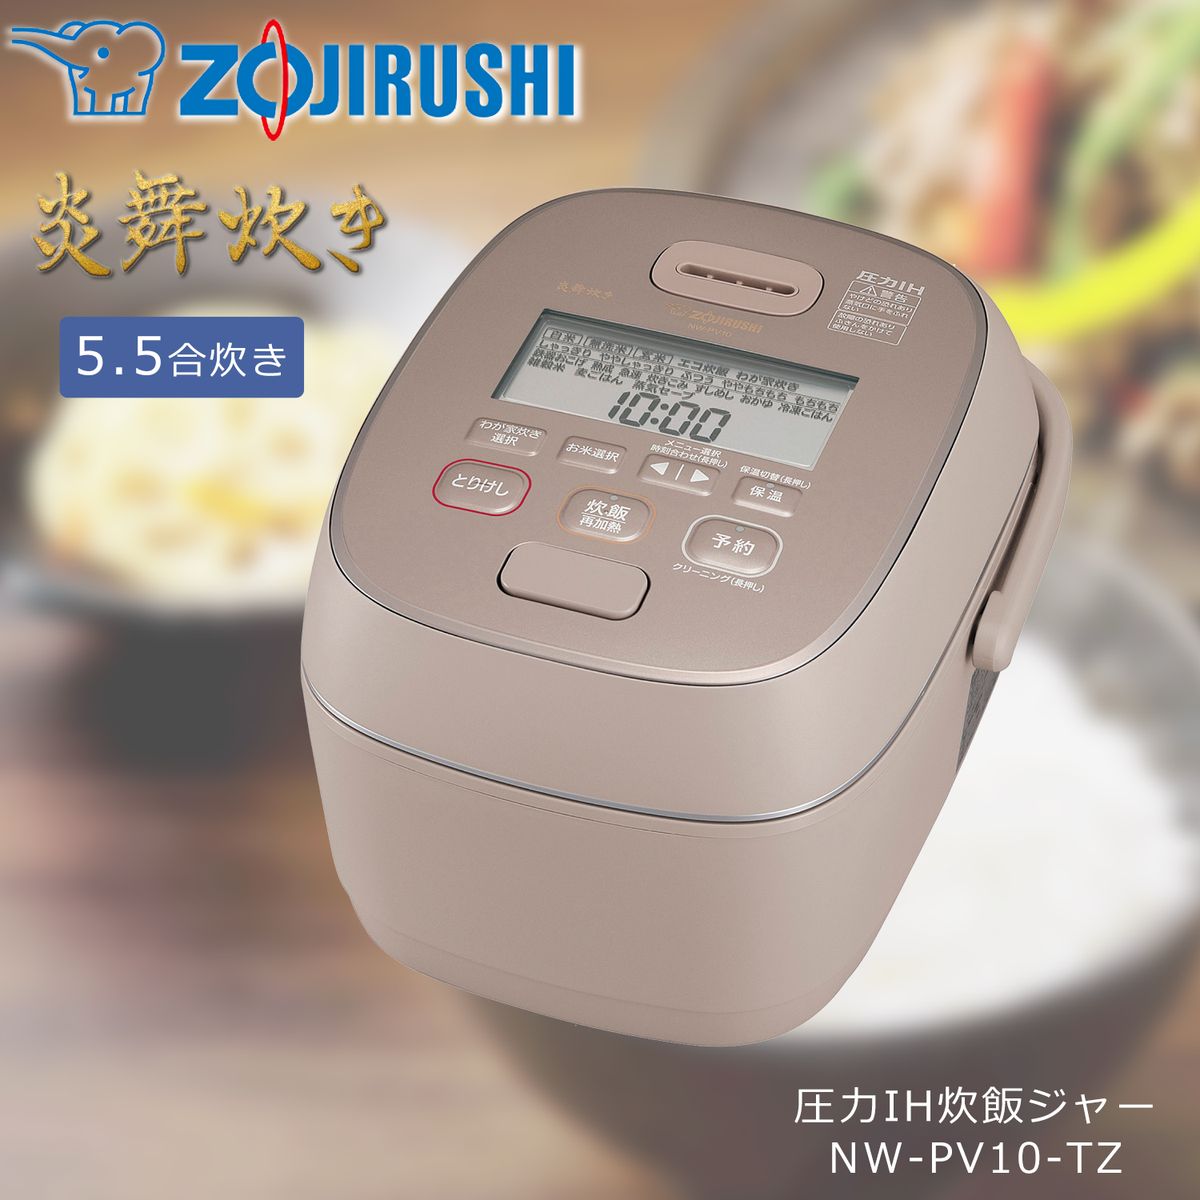 ひかりＴＶショッピング | ZOJIRUSHI 圧力IH炊飯ジャー 5.5合炊き 炎舞